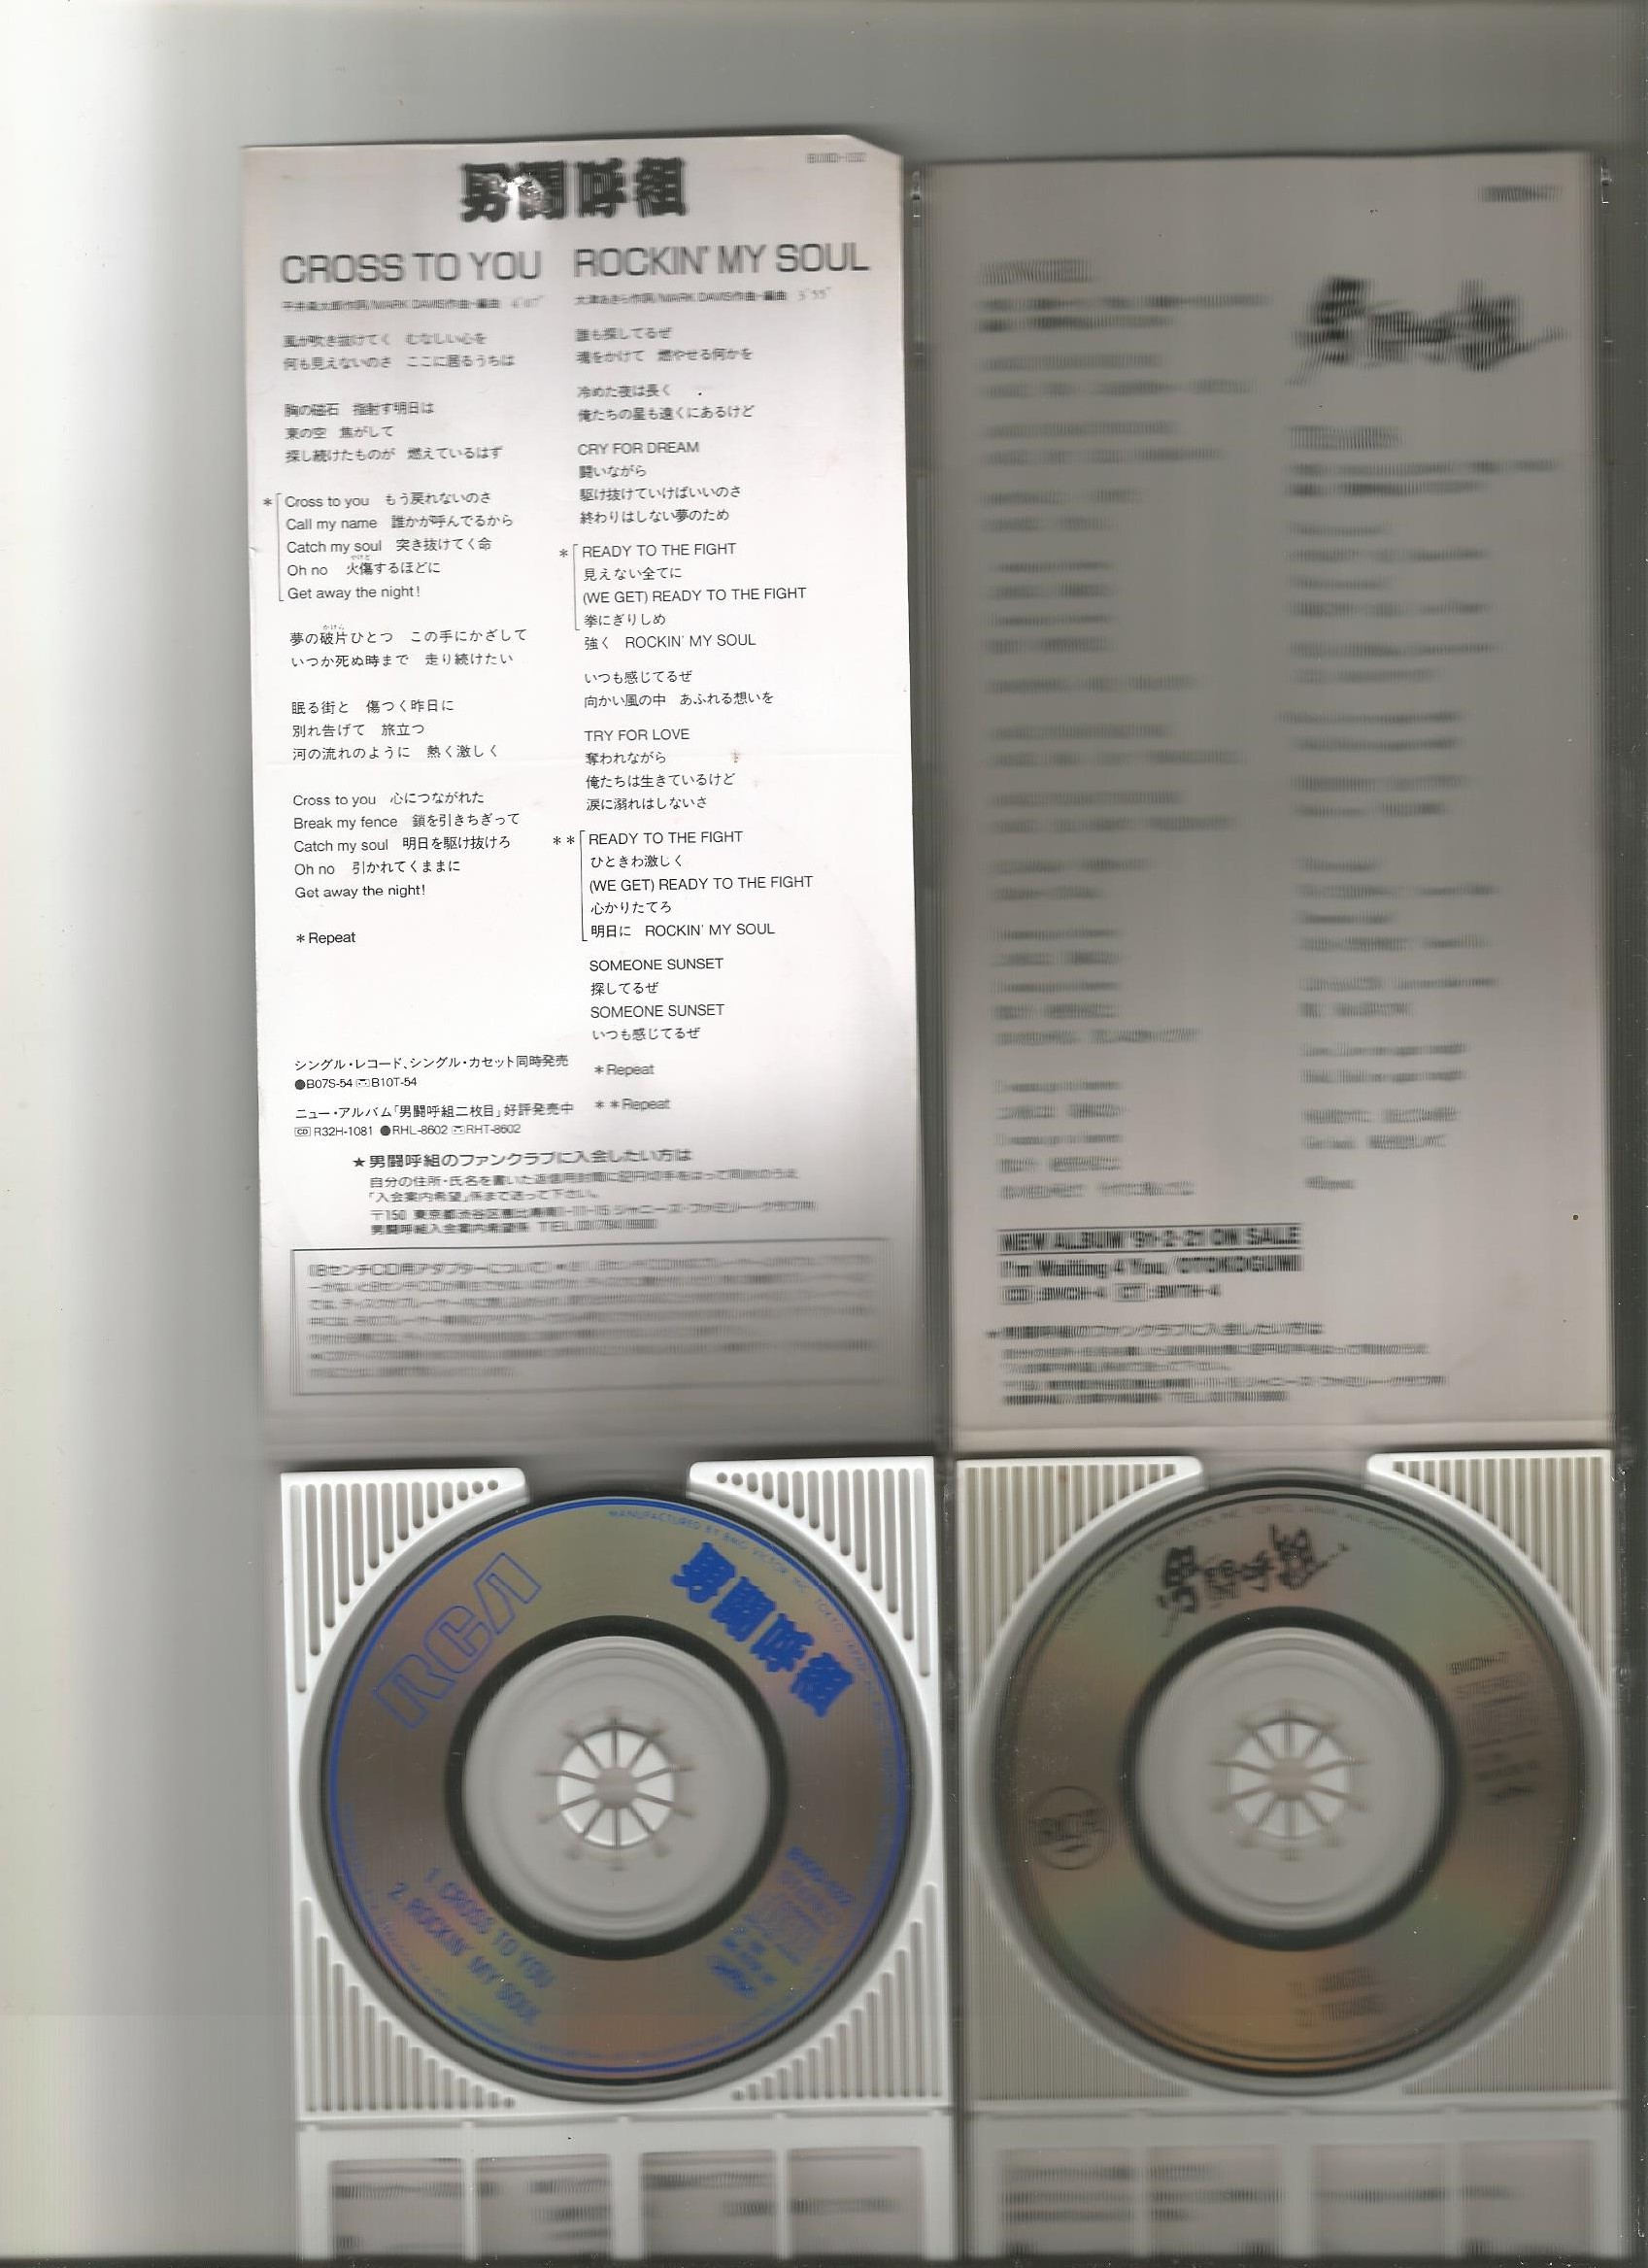 男闘呼組-8吋CDX3 WAV(MEGA盤) - 无损音乐分享区 - 日文老歌论坛 